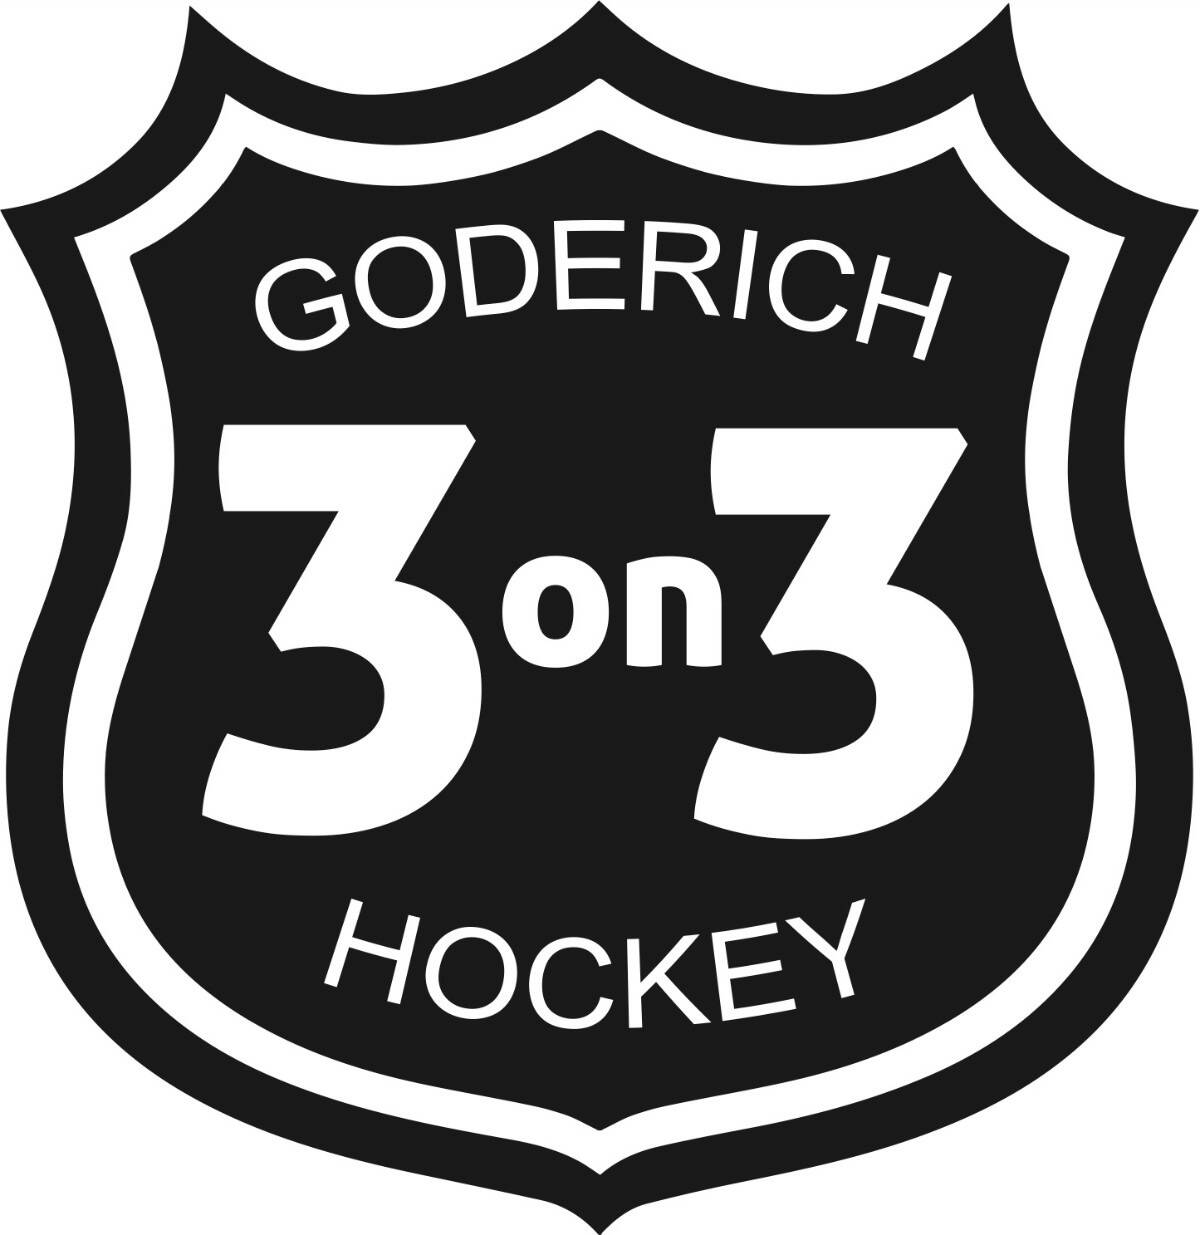 Goderich 3on3 Hockey